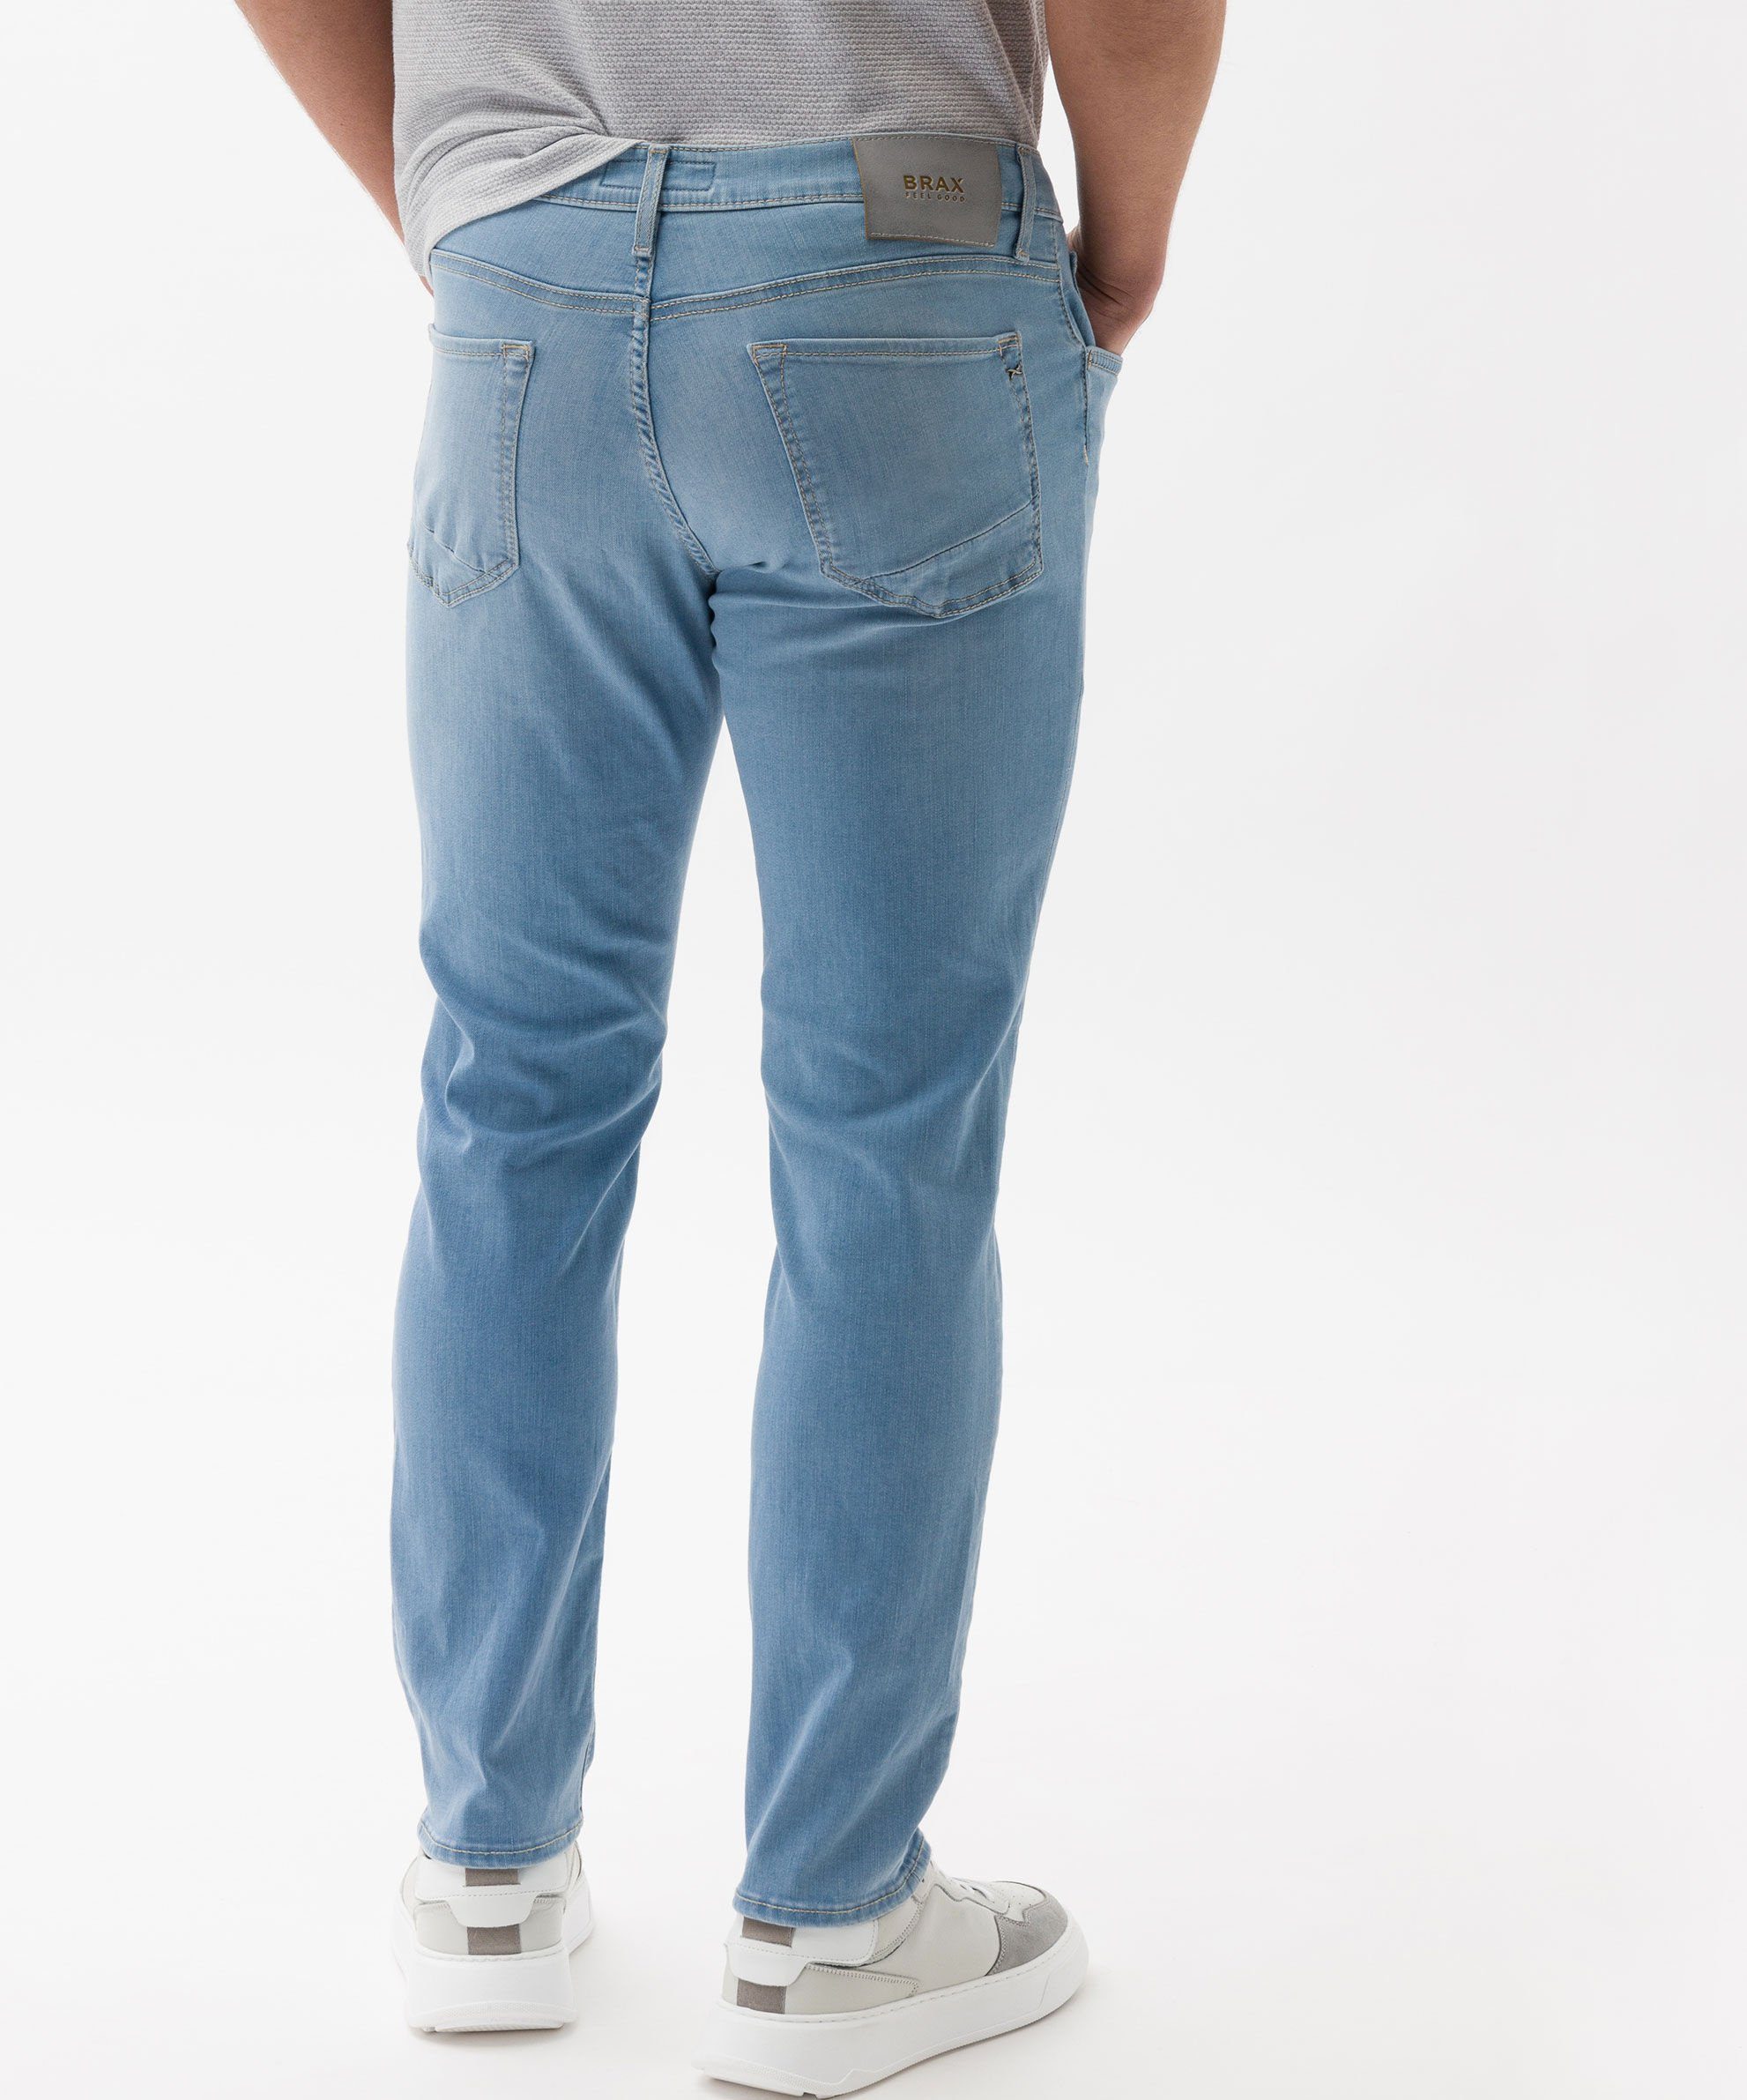 Brax 5-Pocket-Jeans Moderne Five-Pocket-Jeans light blue used